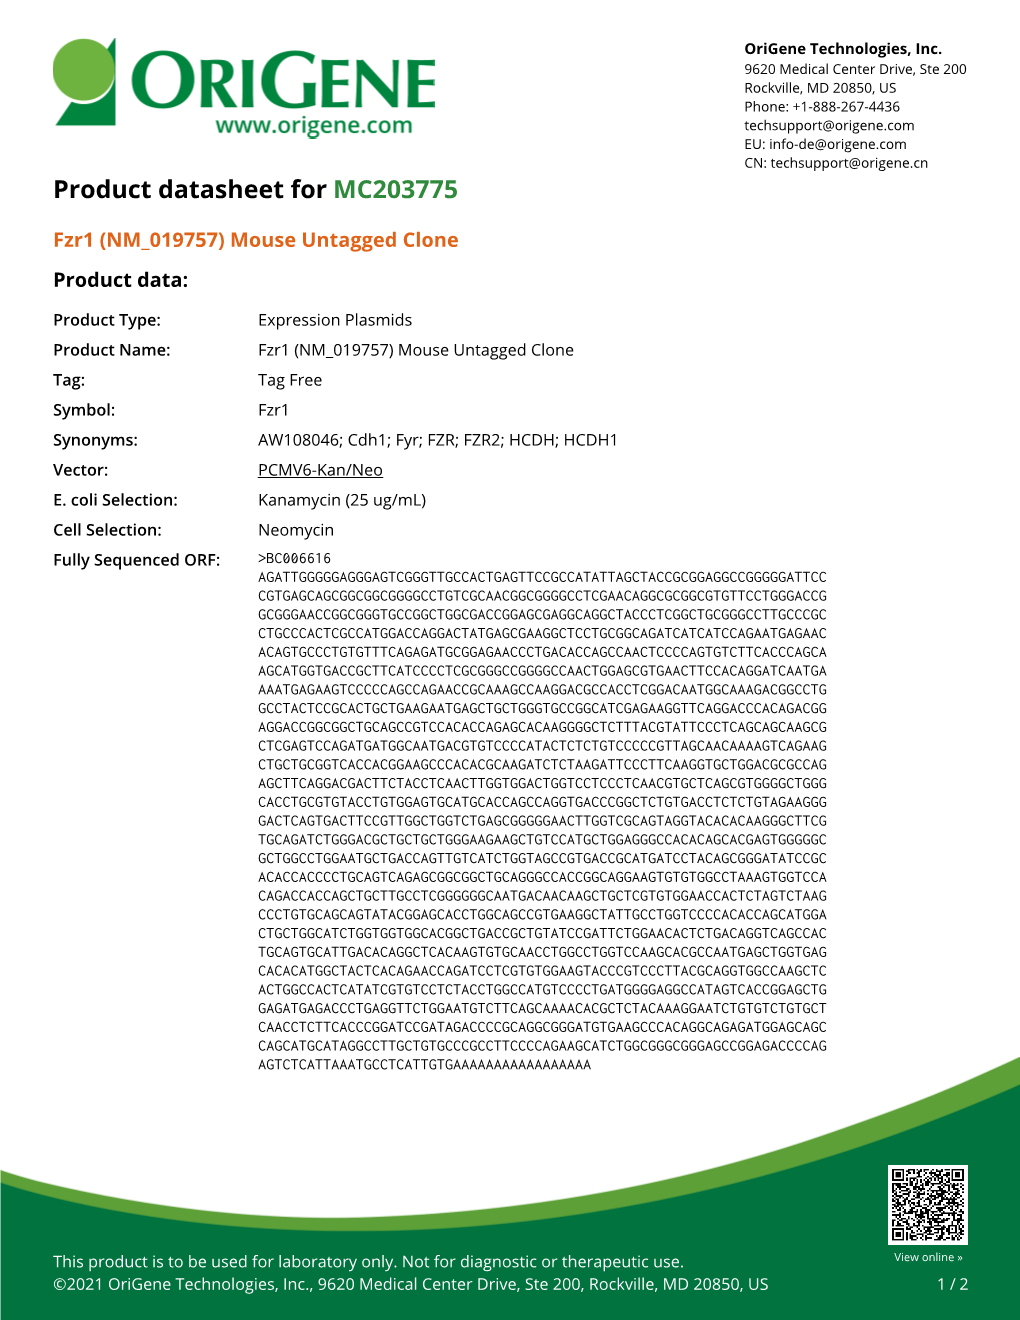 Fzr1 (NM 019757) Mouse Untagged Clone – MC203775 | Origene